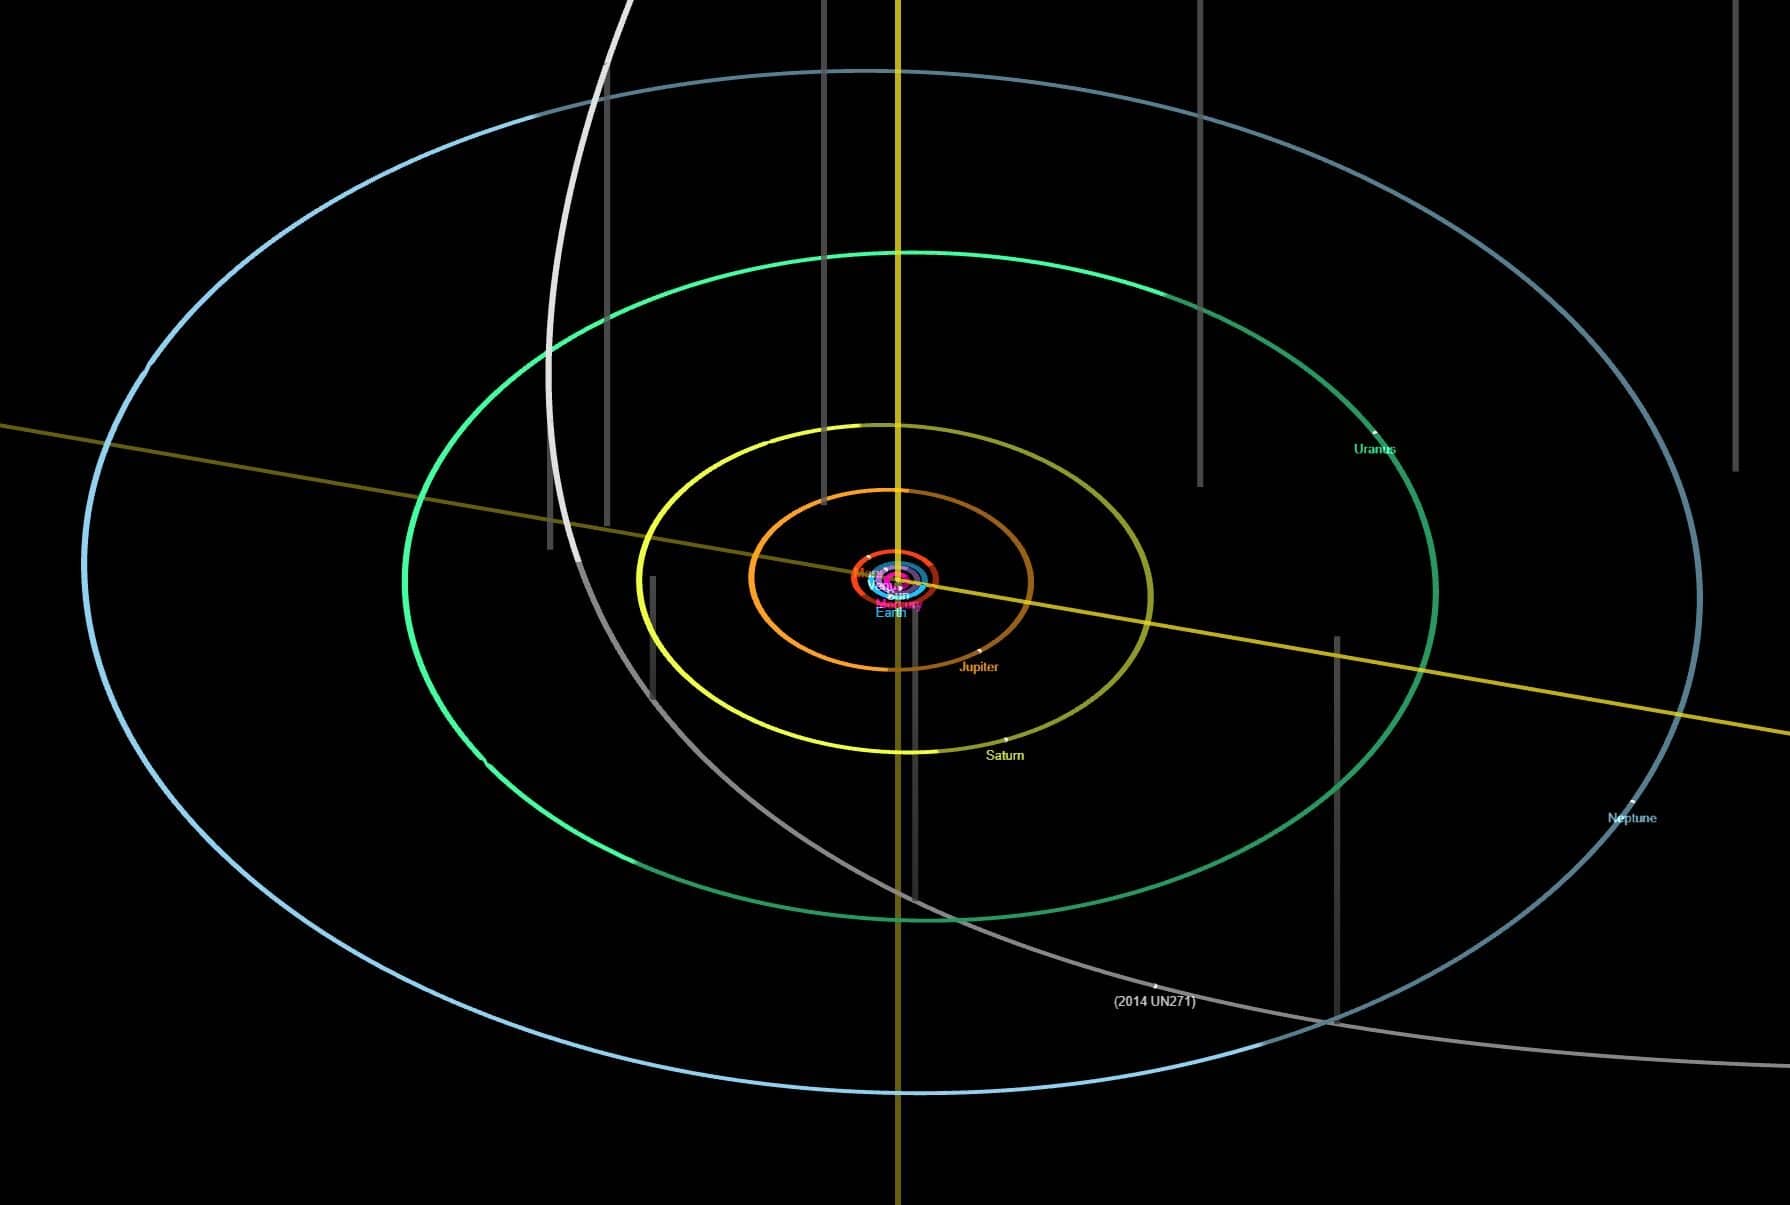 Bolygós rövidhírek: Oort-felhőbe nyúló pályájú objektumot fedeztek fel